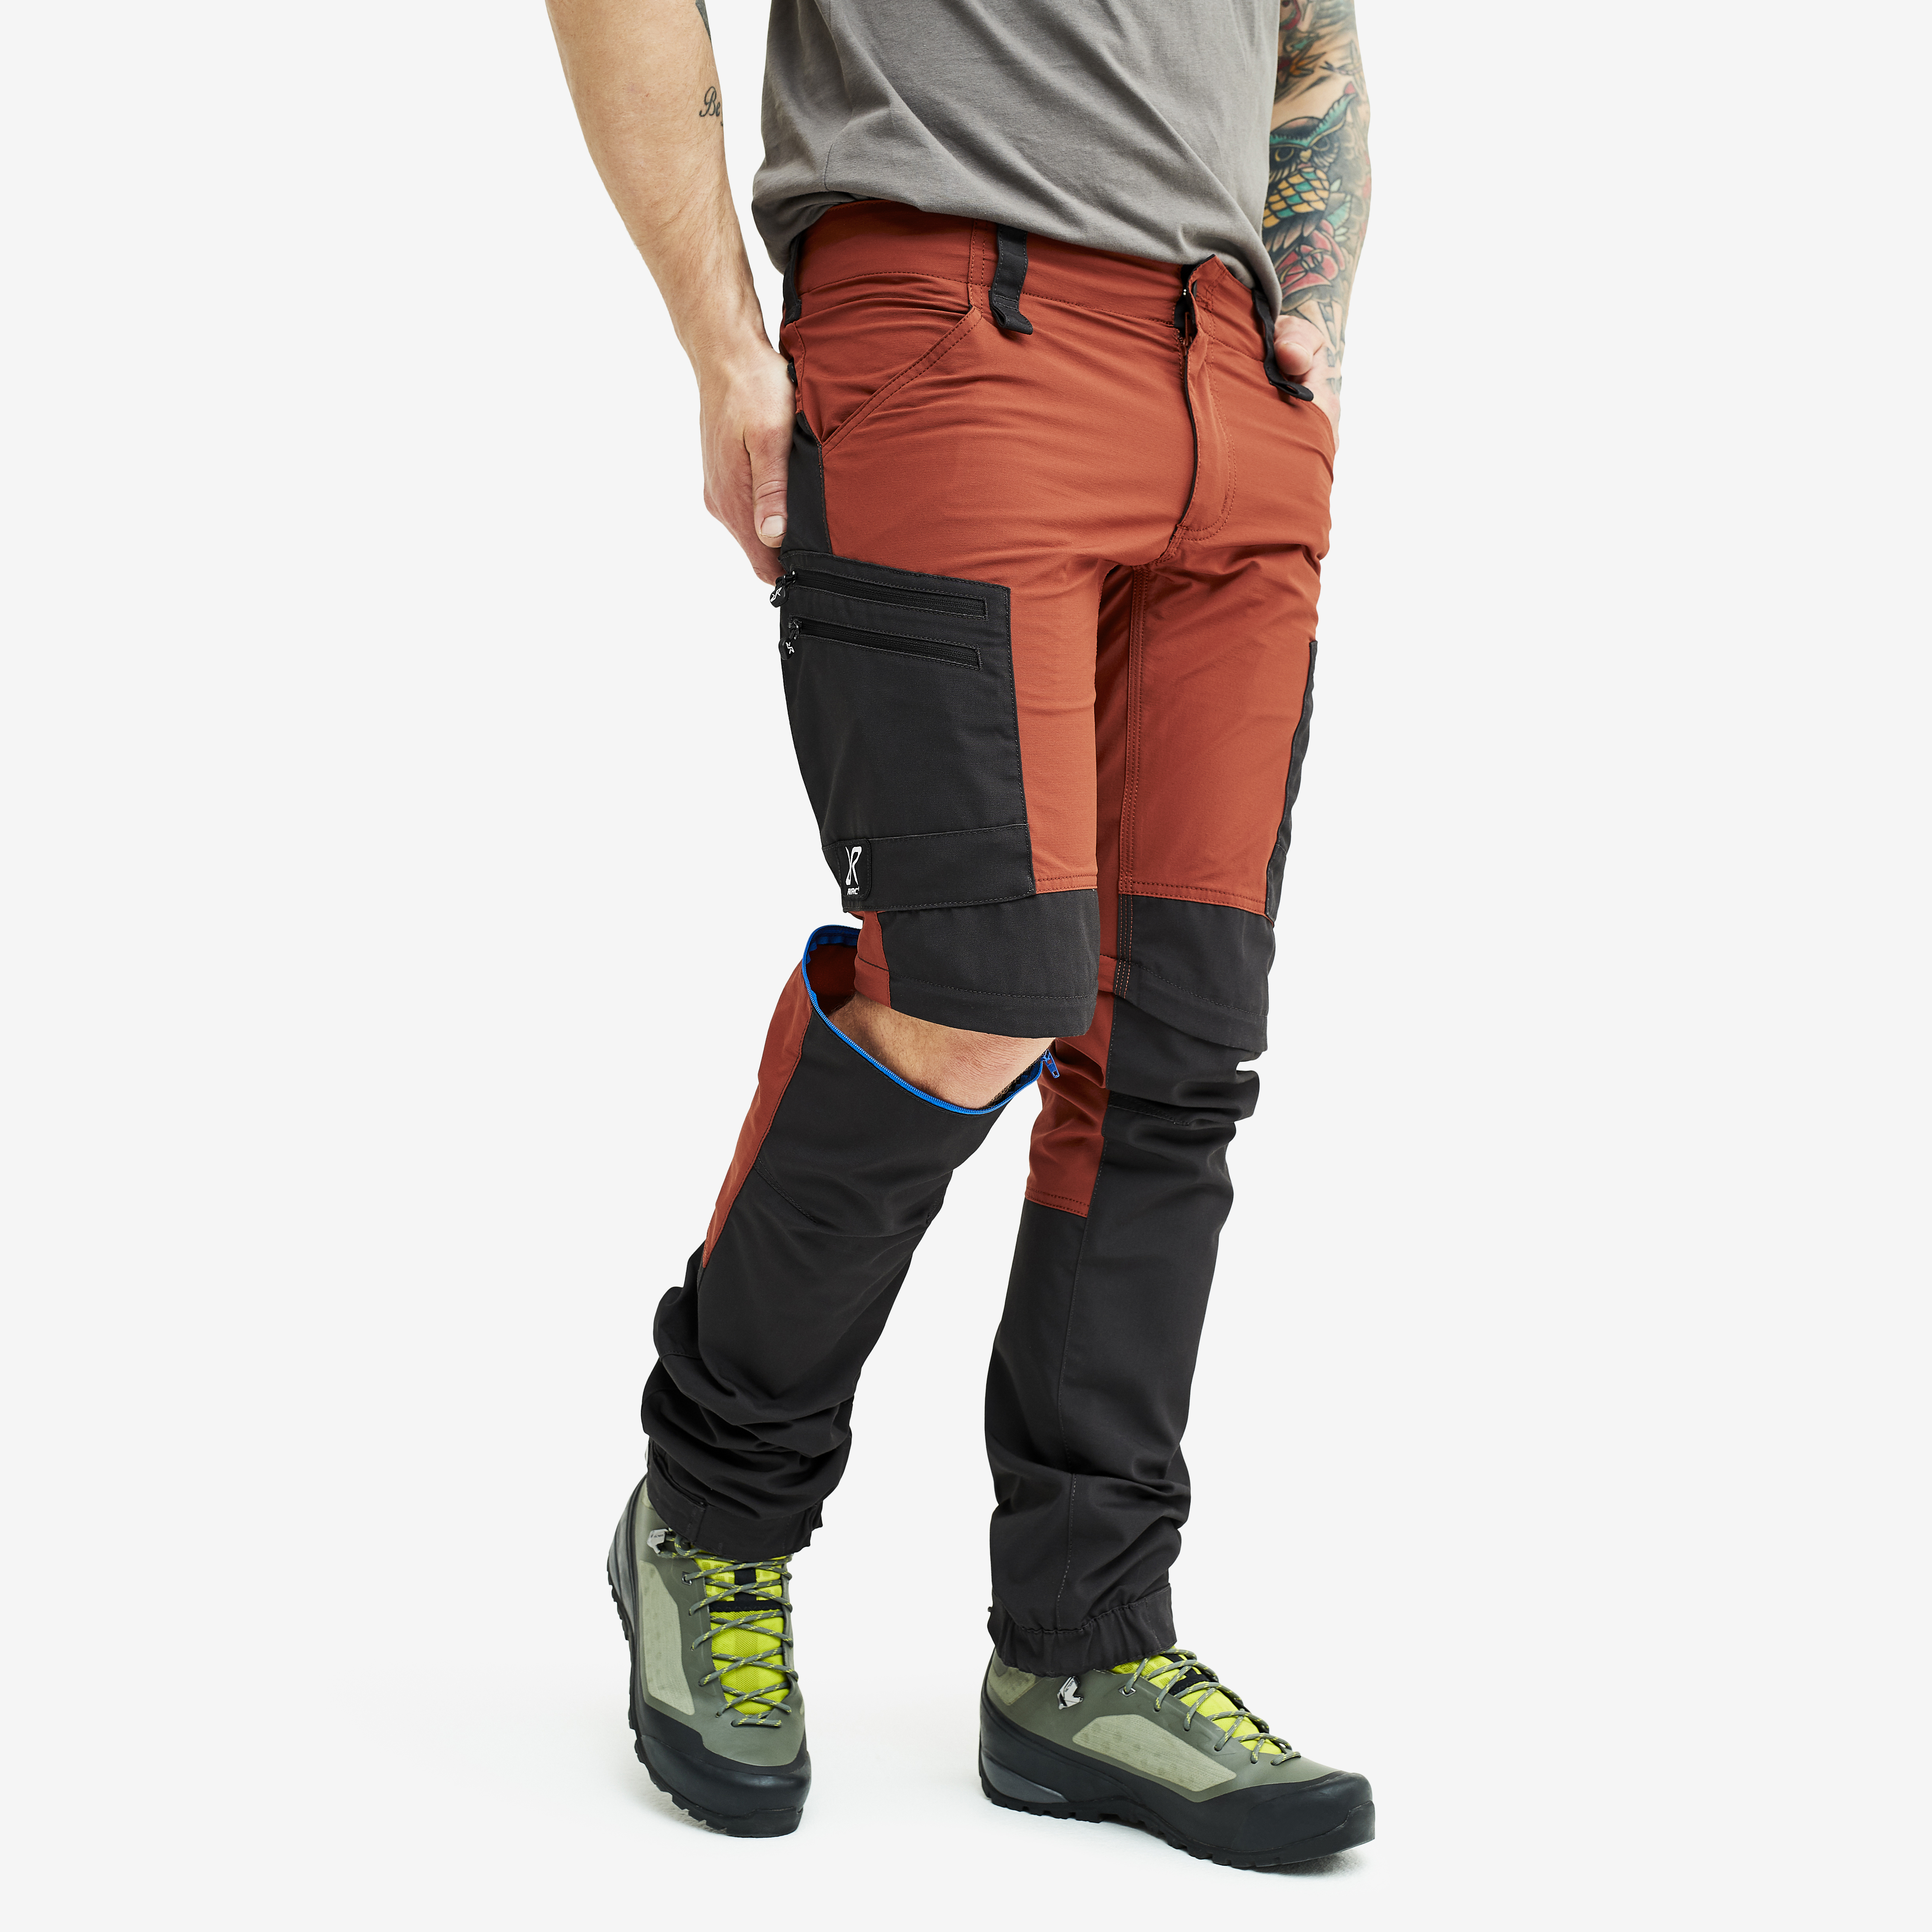 RVRC GP Pro Zip-off turistické kalhoty pro muže v oranžové barvě